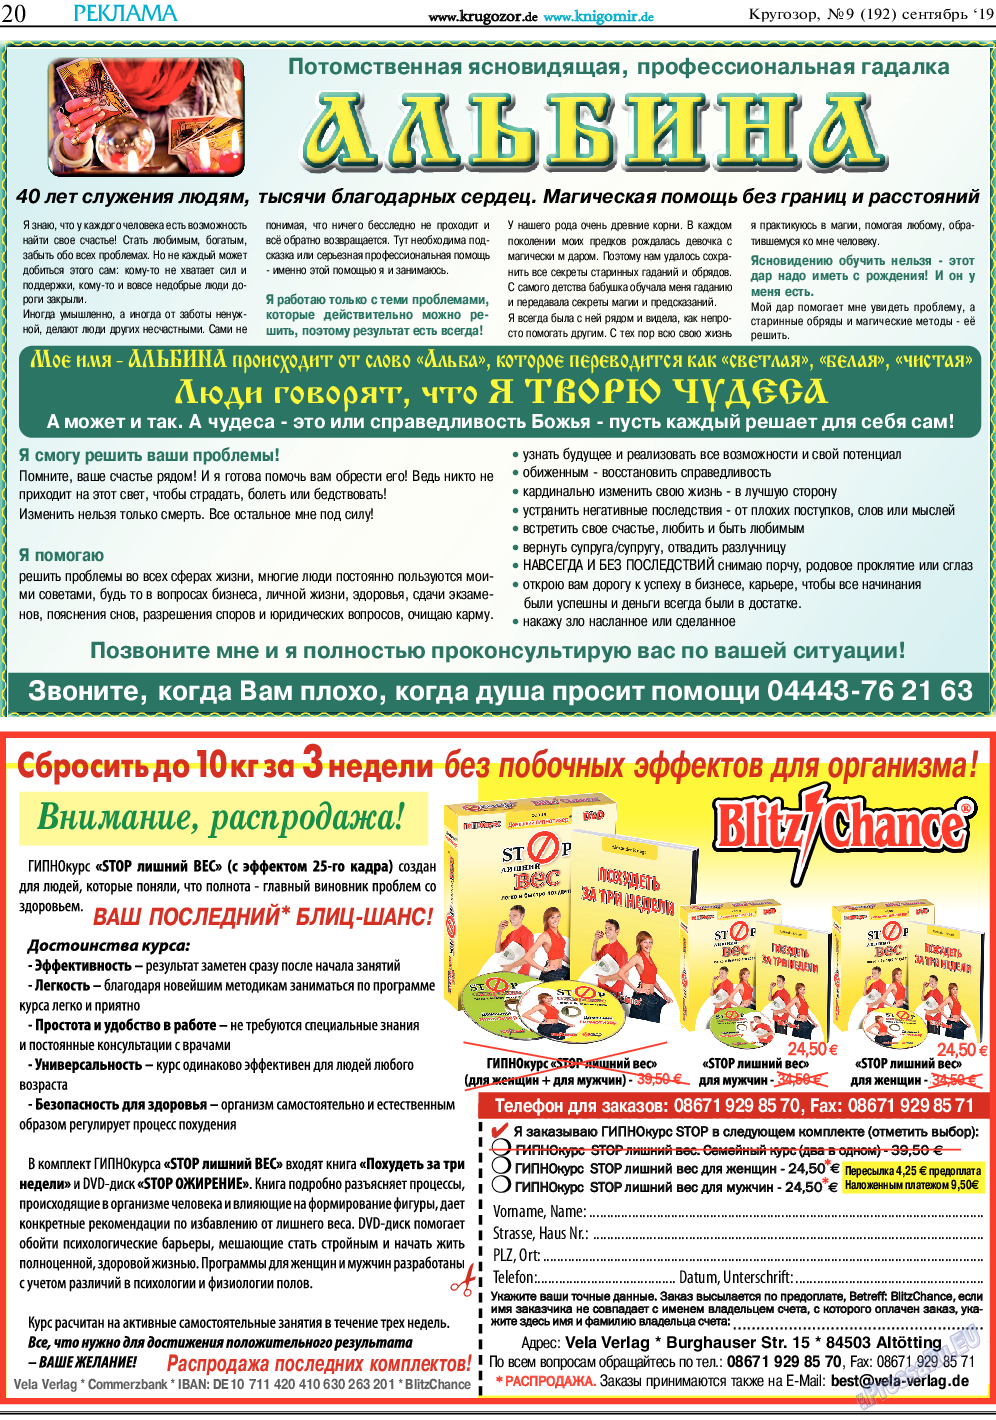 Кругозор, газета. 2019 №9 стр.20